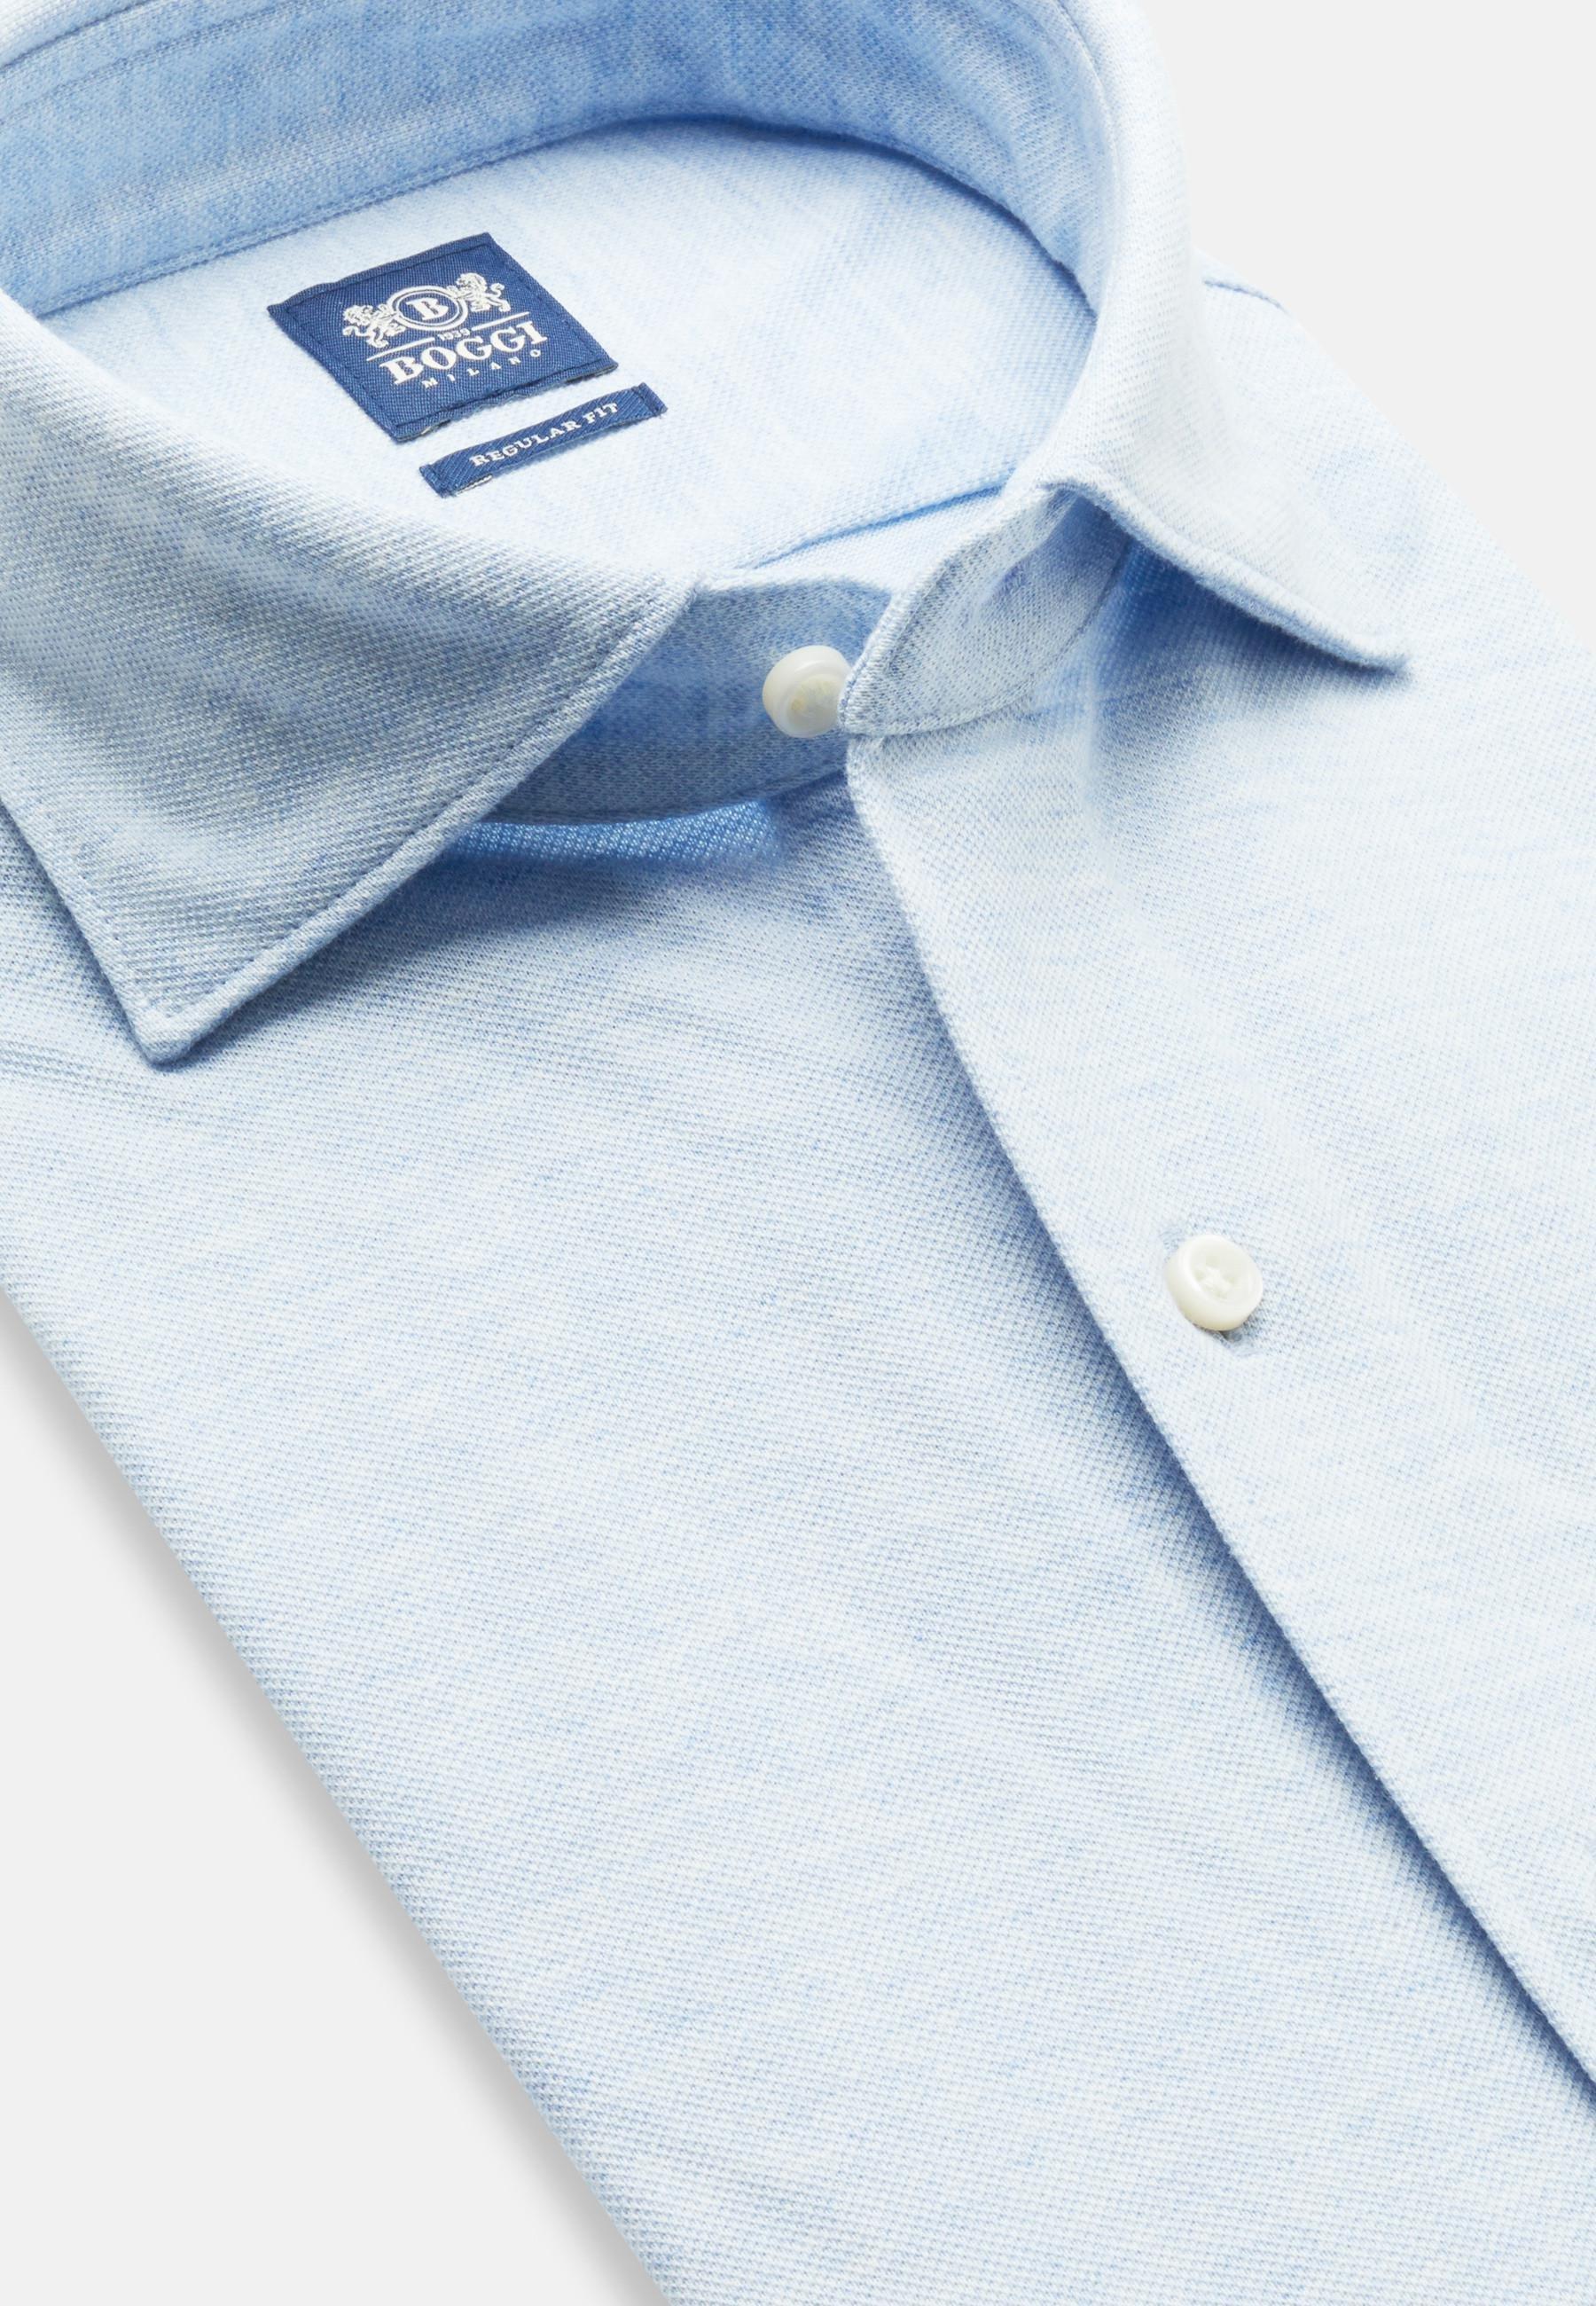 Boggi Milano - Blue Cotton Pique Polo Shirt